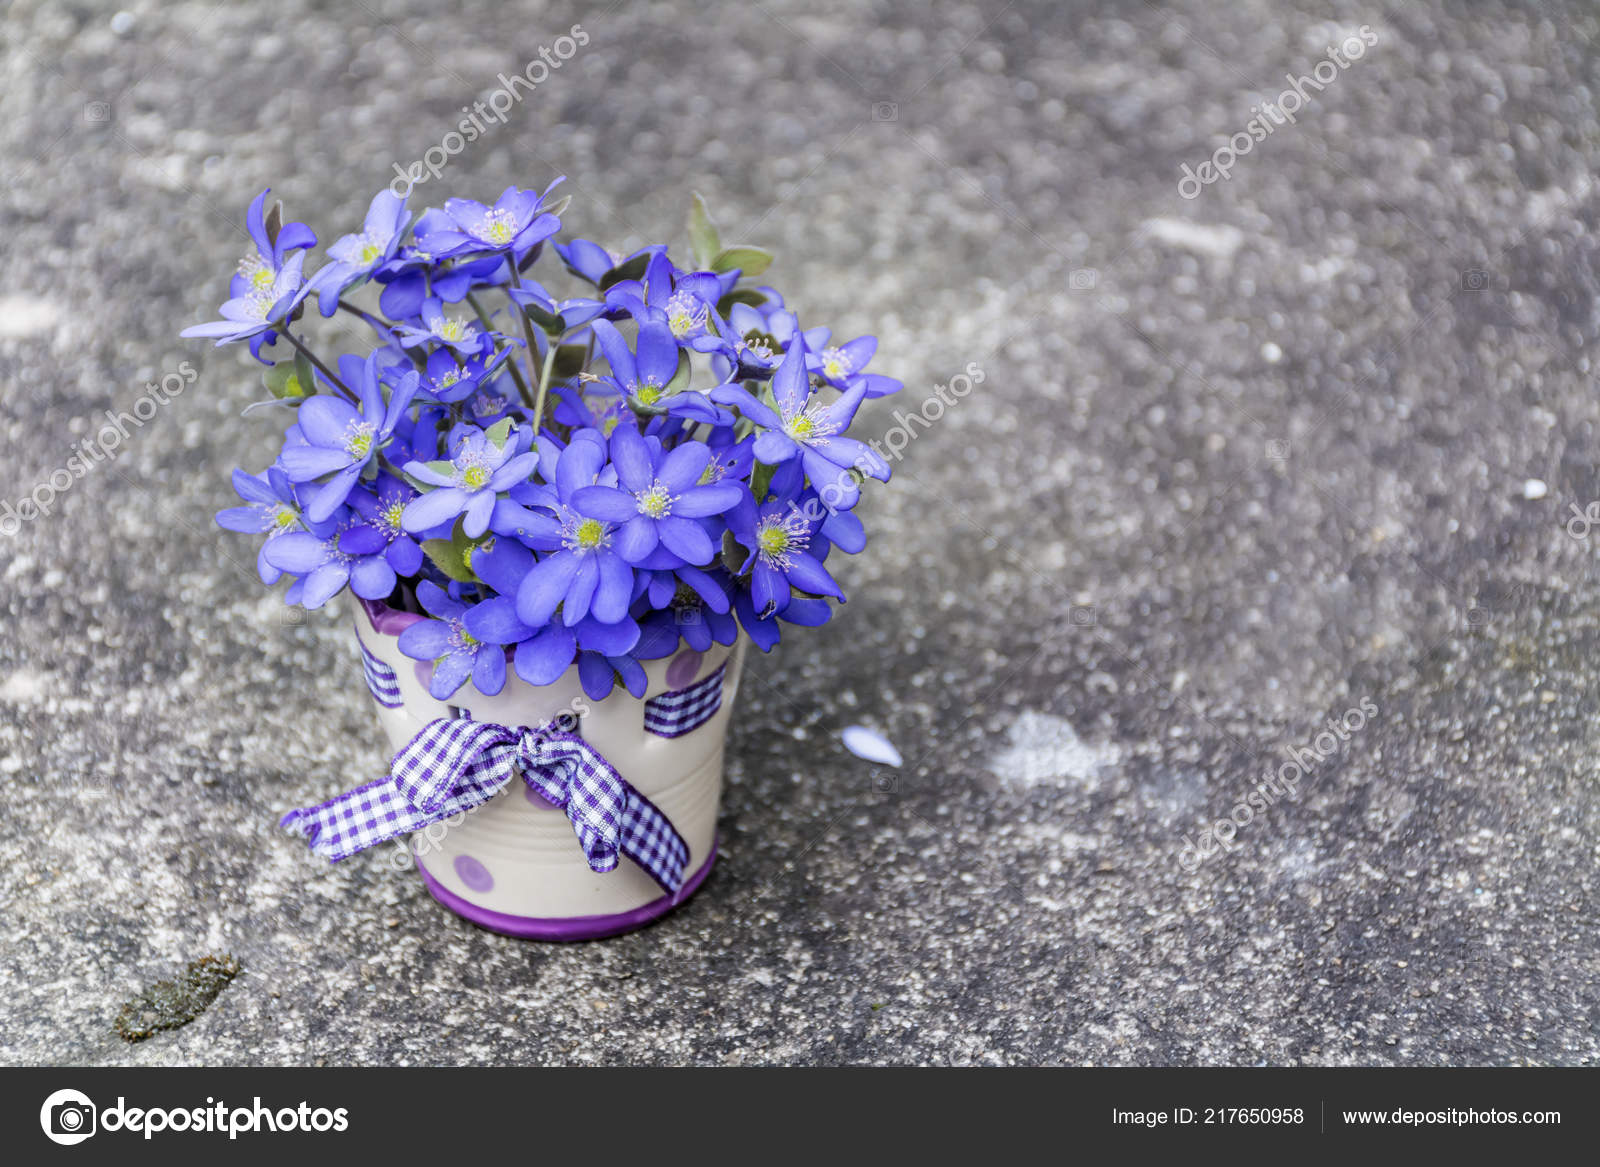 Hermoso Ramo Flores Azules Pequeño Jarrón Con Puntos Cinta: fotografía de  stock © brnmanzurova.gmail.com #217650958 | Depositphotos